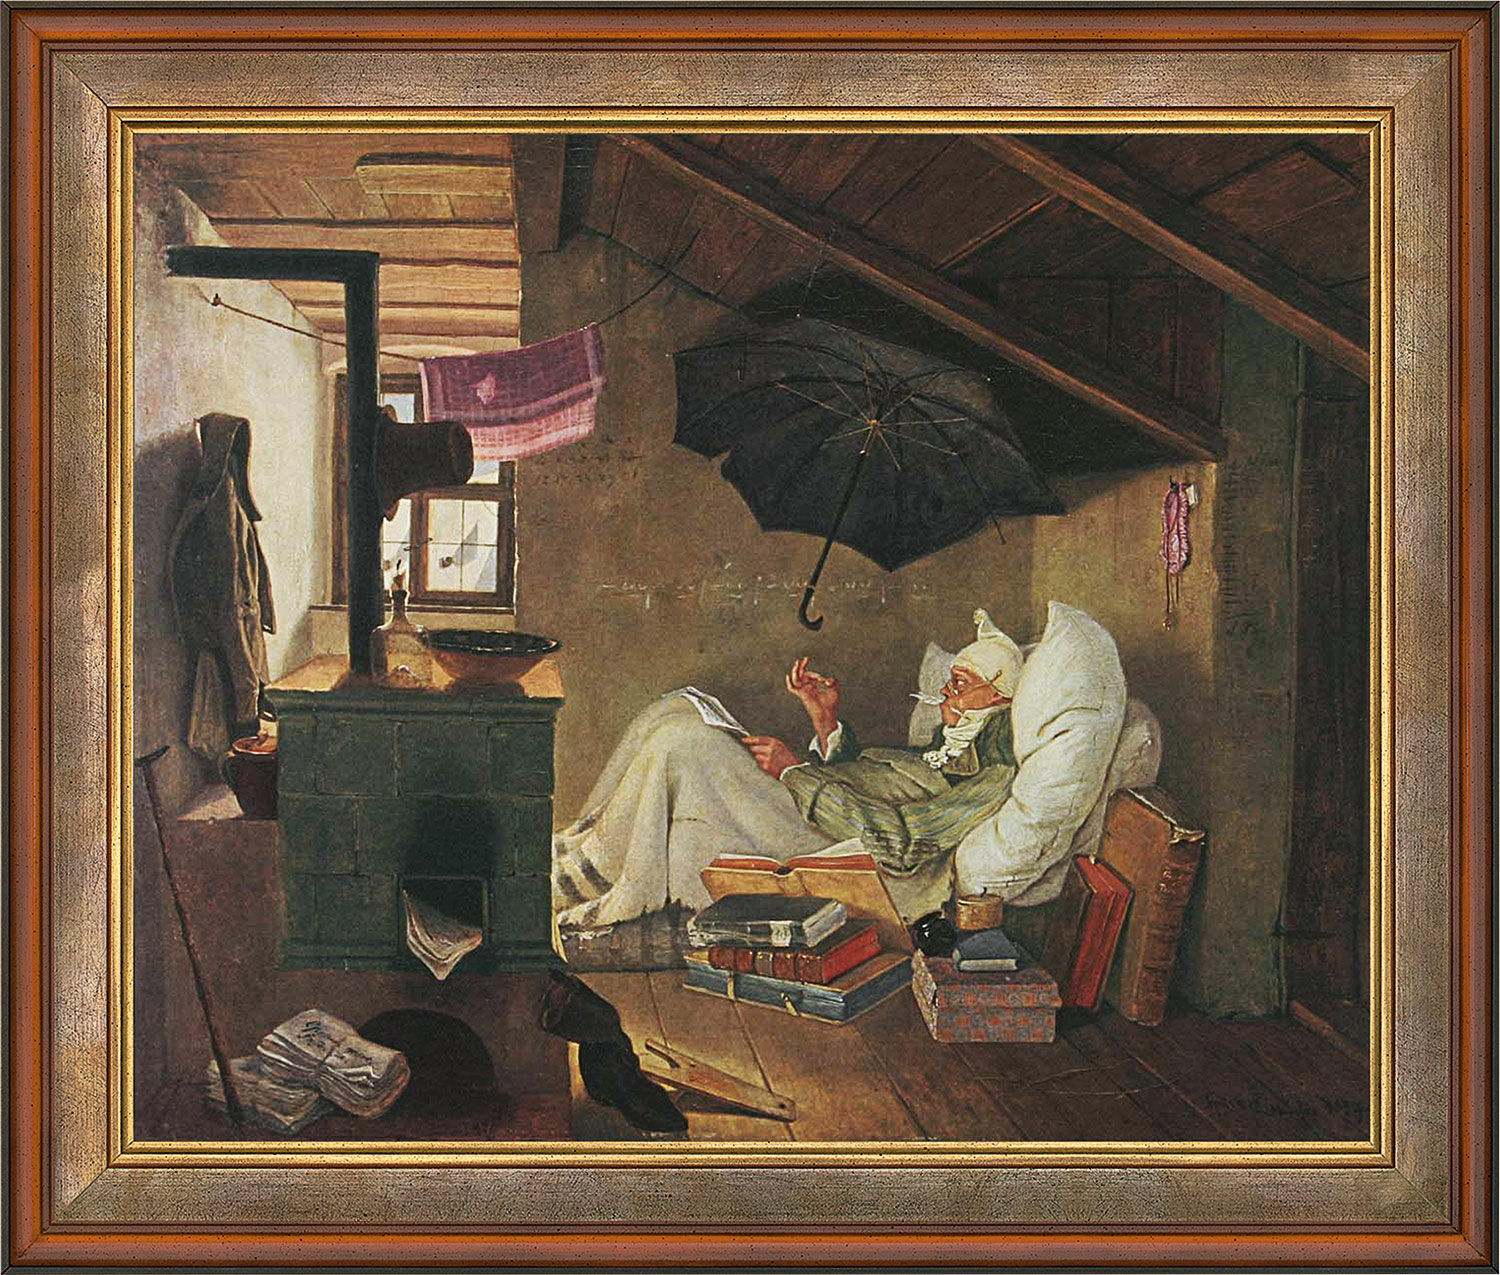 Bild "Den fattige poeten" (1839), inramad von Carl Spitzweg